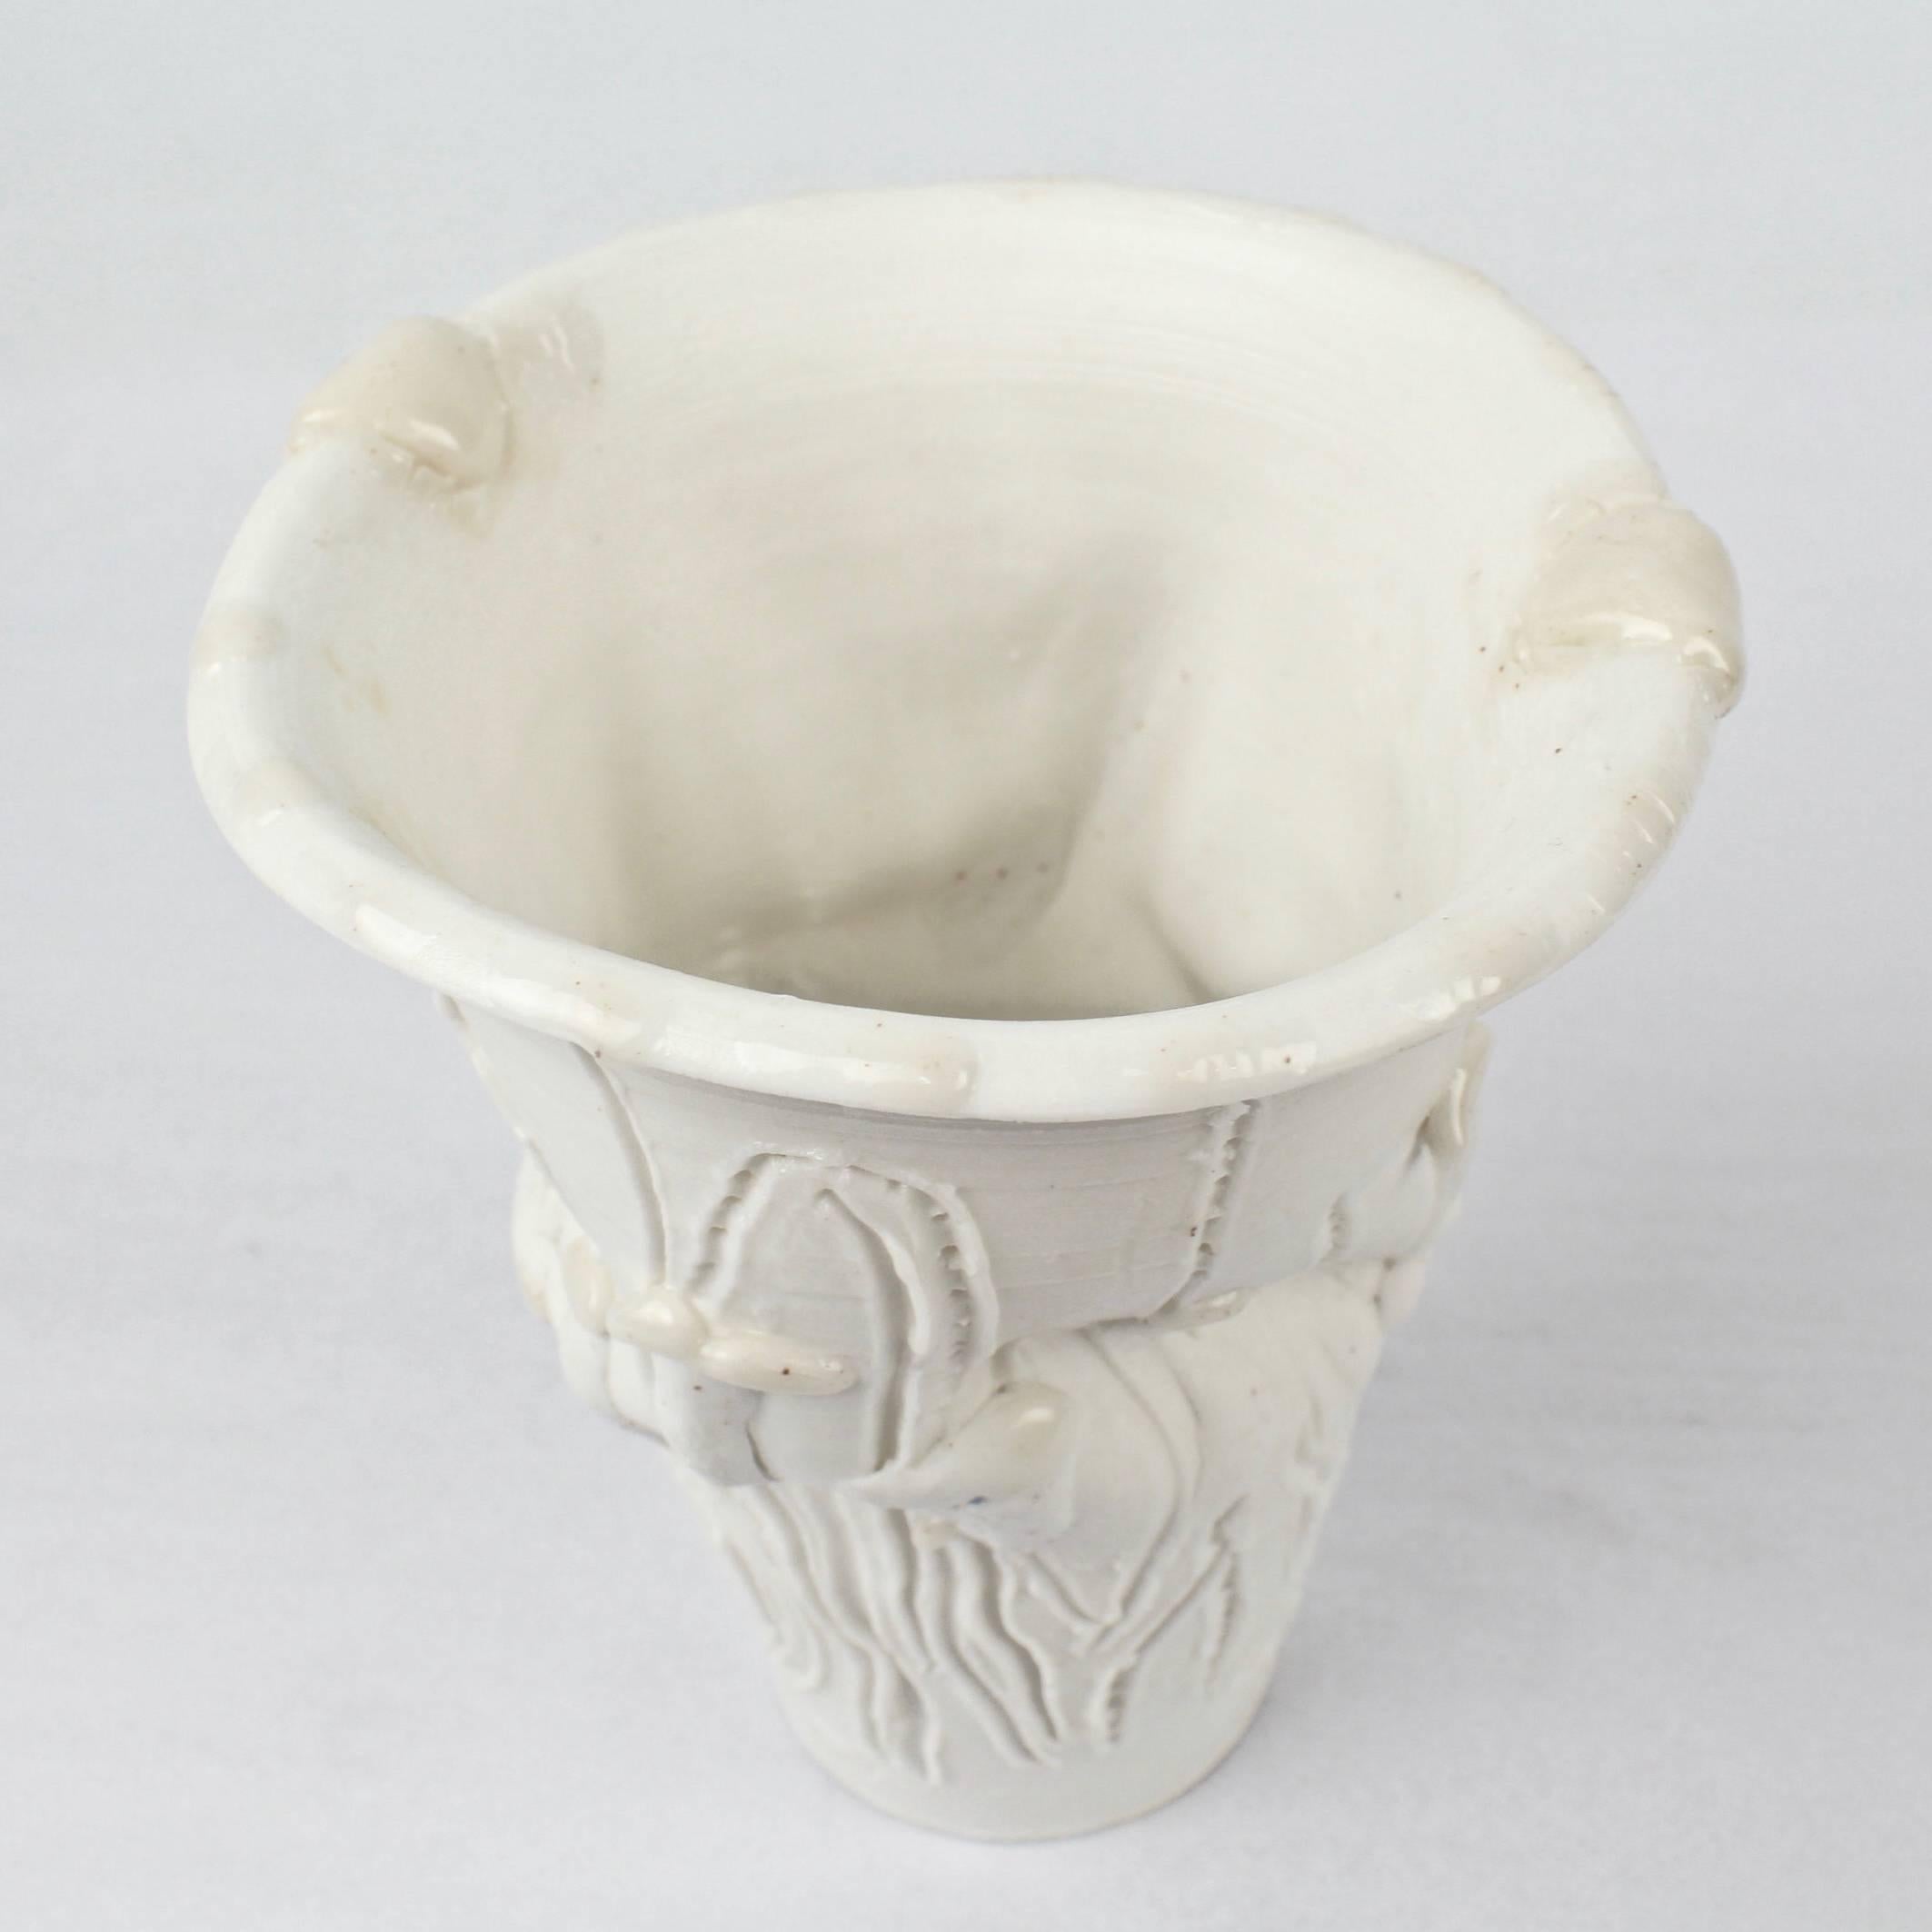 Large Complex Light Gatherer Porcelain Vase by Rudolf 